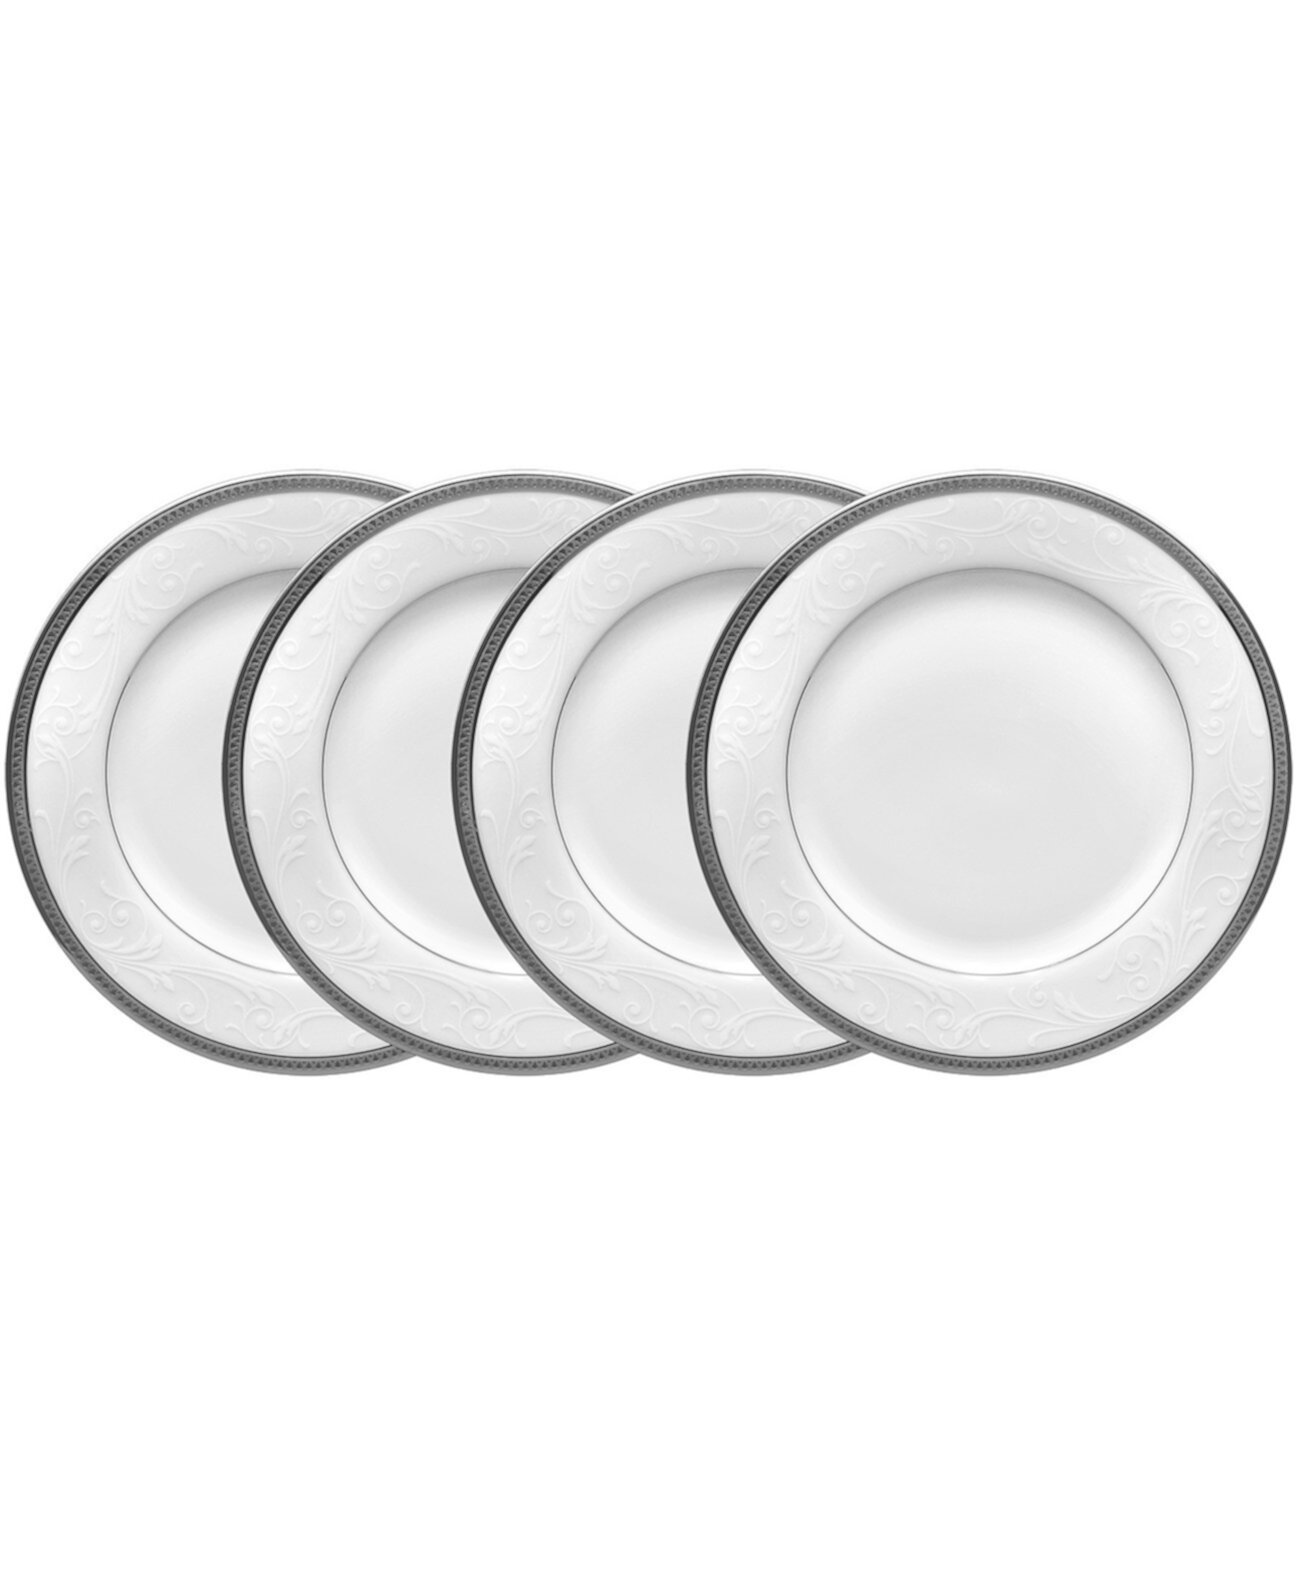 Regina Platinum Набор из 4 тарелок для хлеба, масла и закусок, сервиз на 4 персоны Noritake